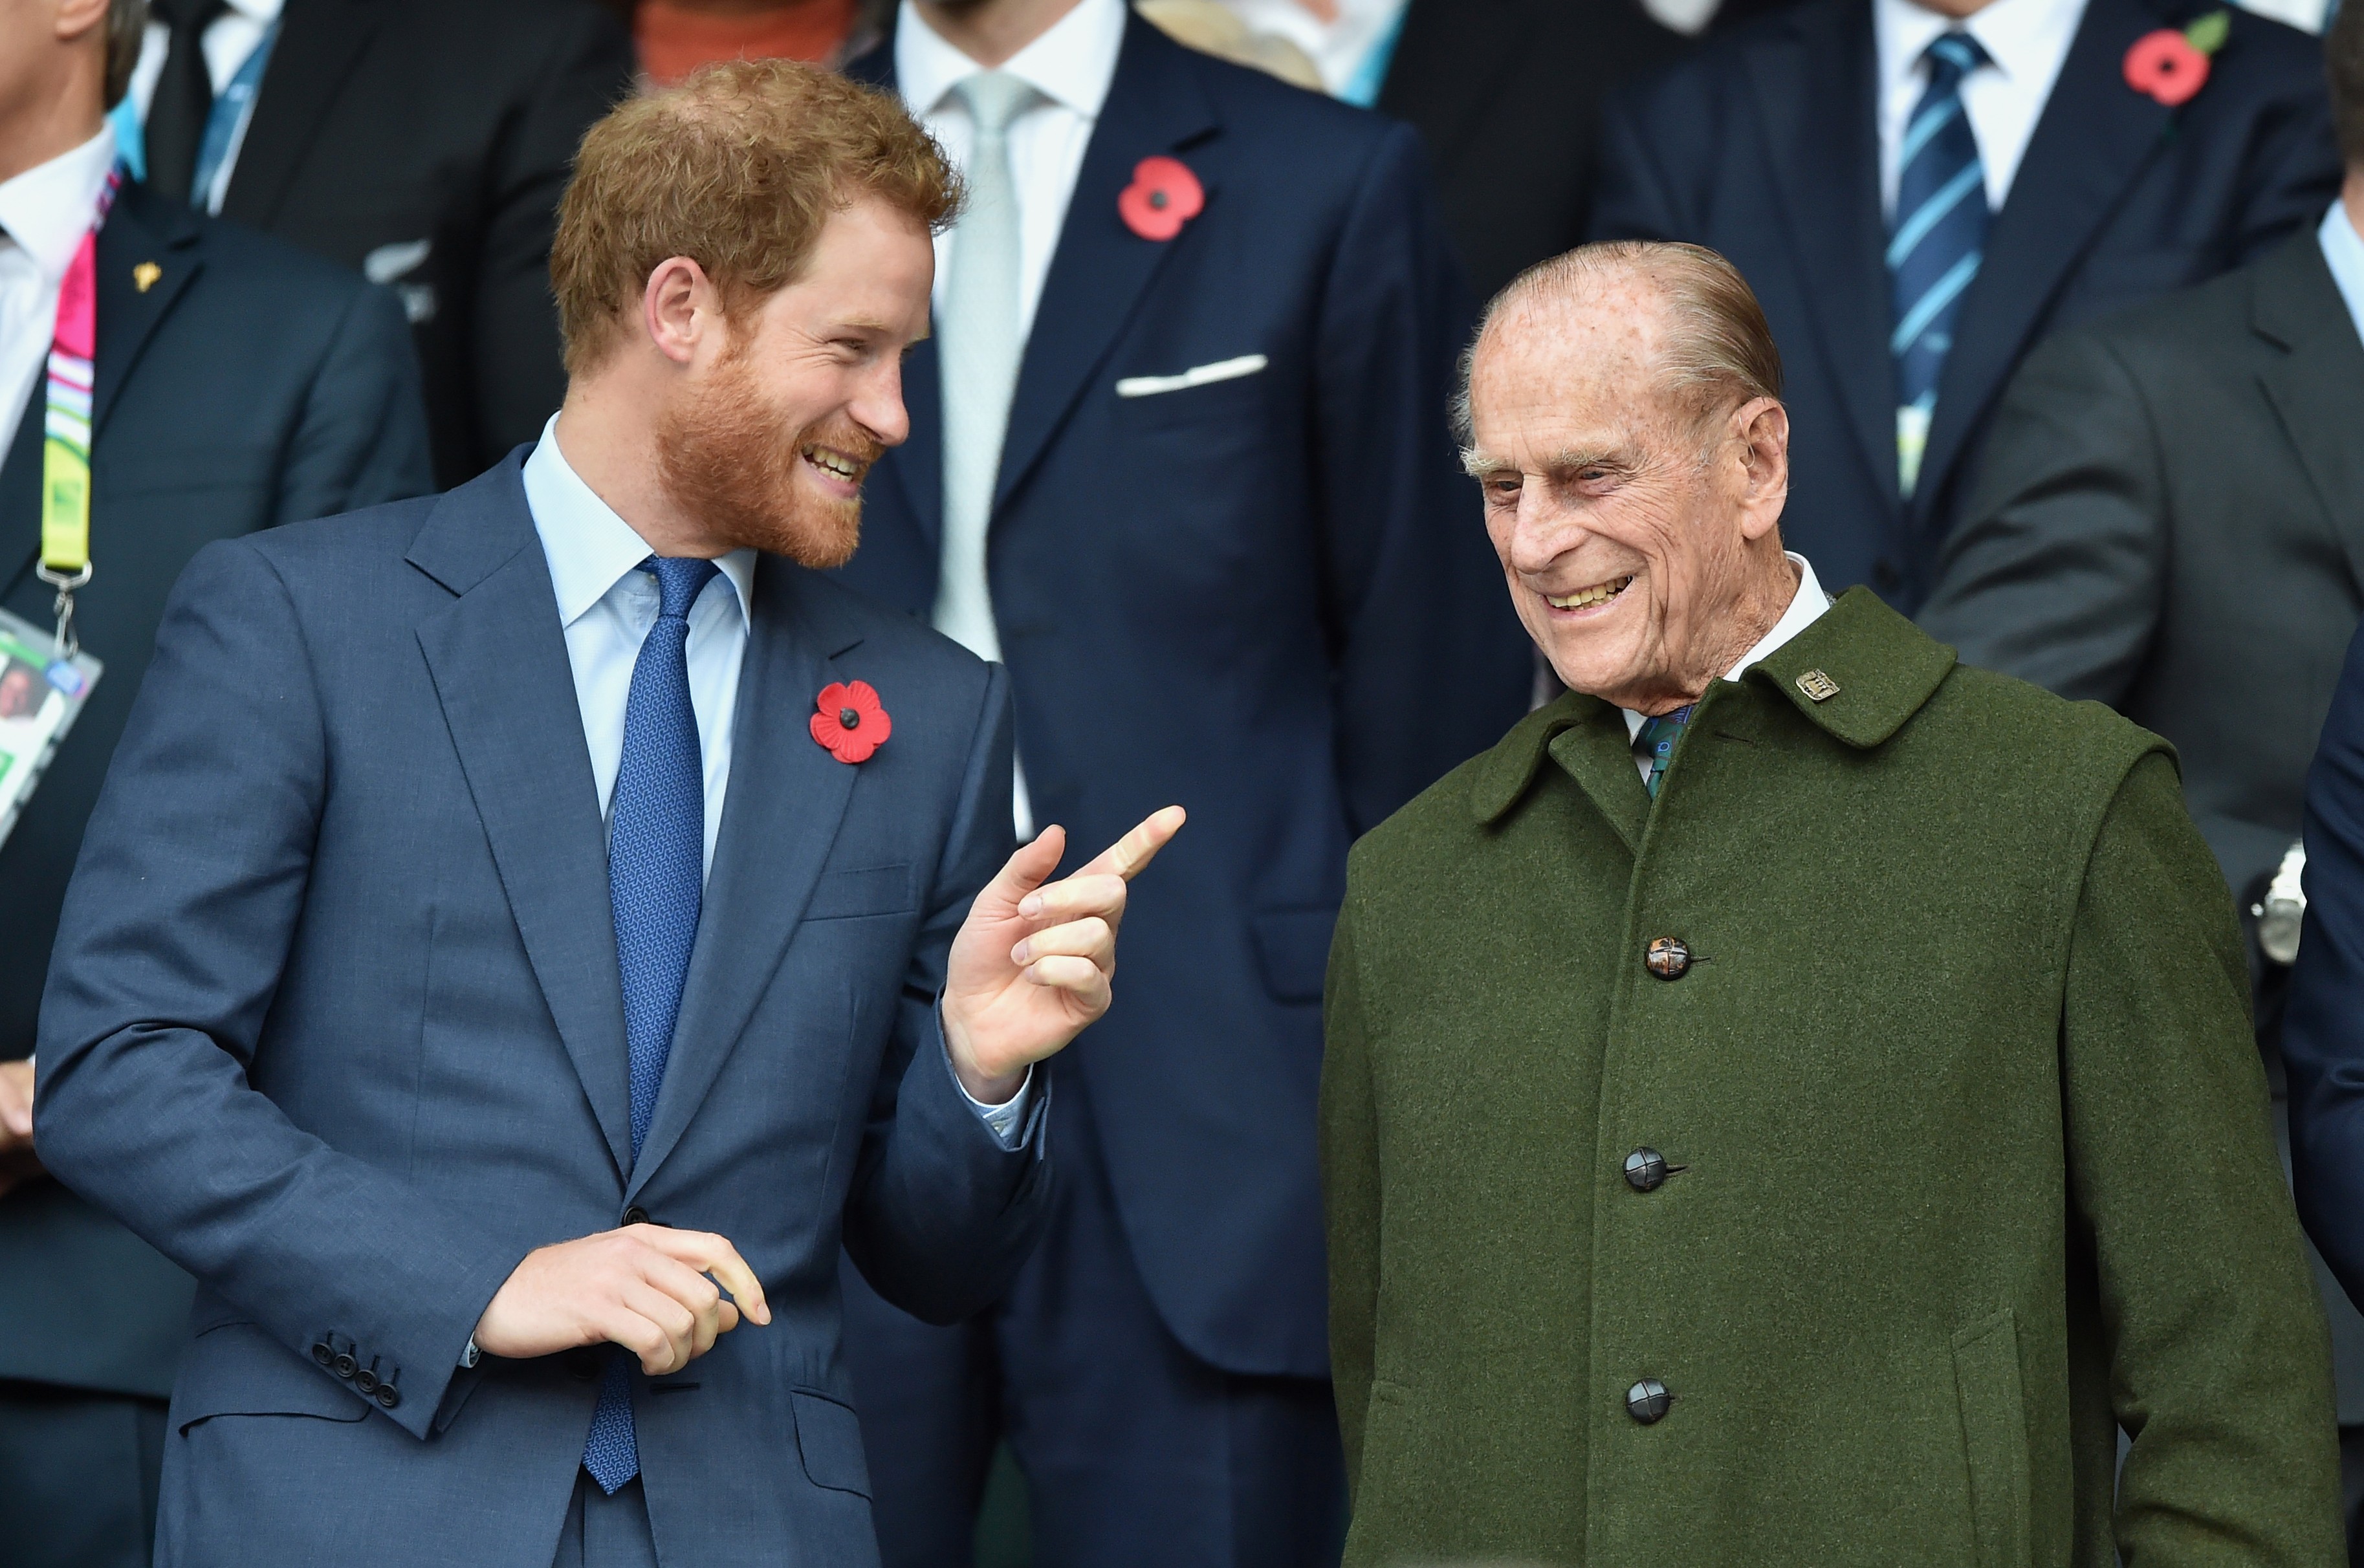 O Príncipe Harry com o avô, Príncipe Philip, marido da Rainha Elizabeth 2ª, na final da Copa do Mundo de Rugby de 2015, entre Nova Zelândia e Austrália (Foto: Getty Images)